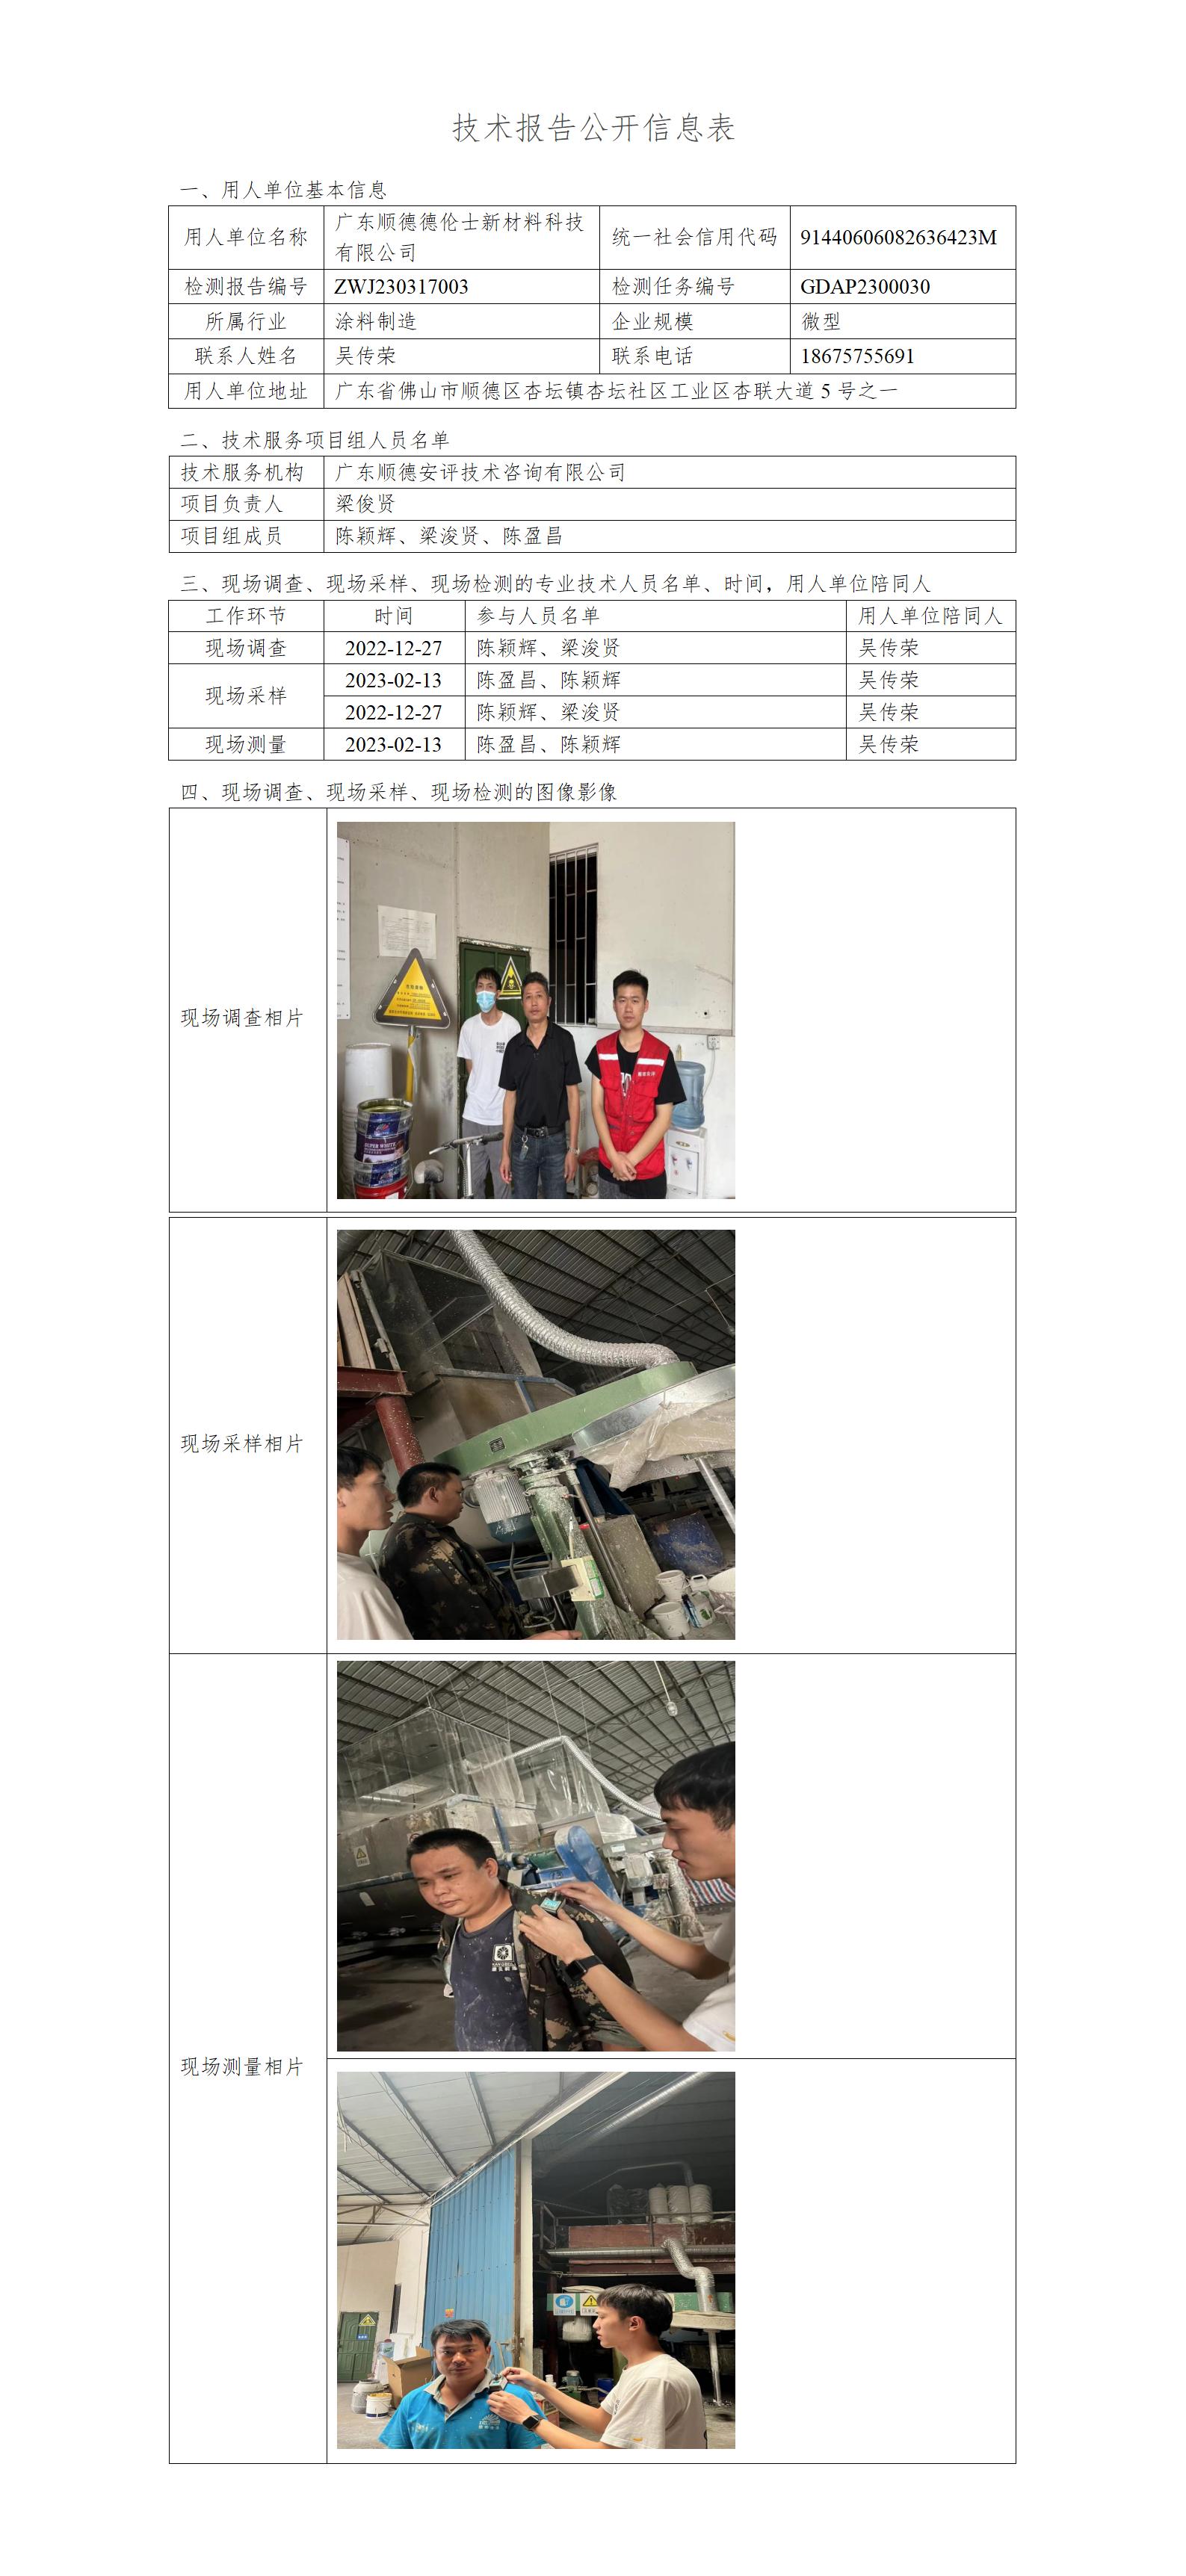 广东顺德德伦士新材料科技有限公司-2023-技术报告公开信息表_01.jpg